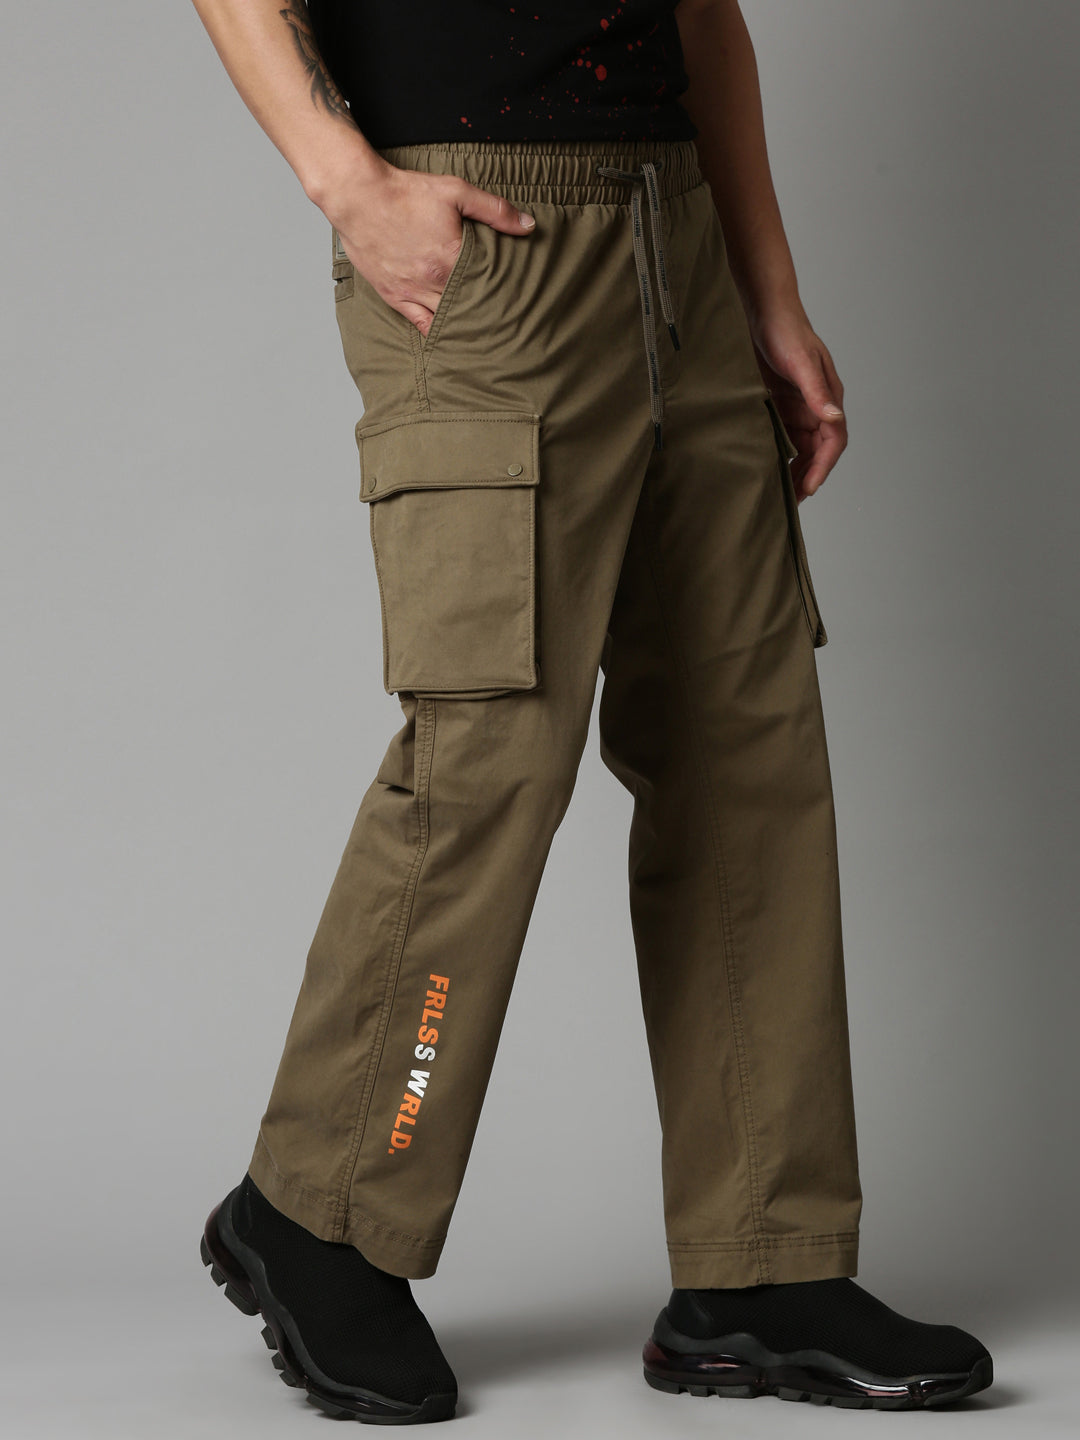 Breakbounce Cargo Trousers - Buy Breakbounce Cargo Trousers online in India